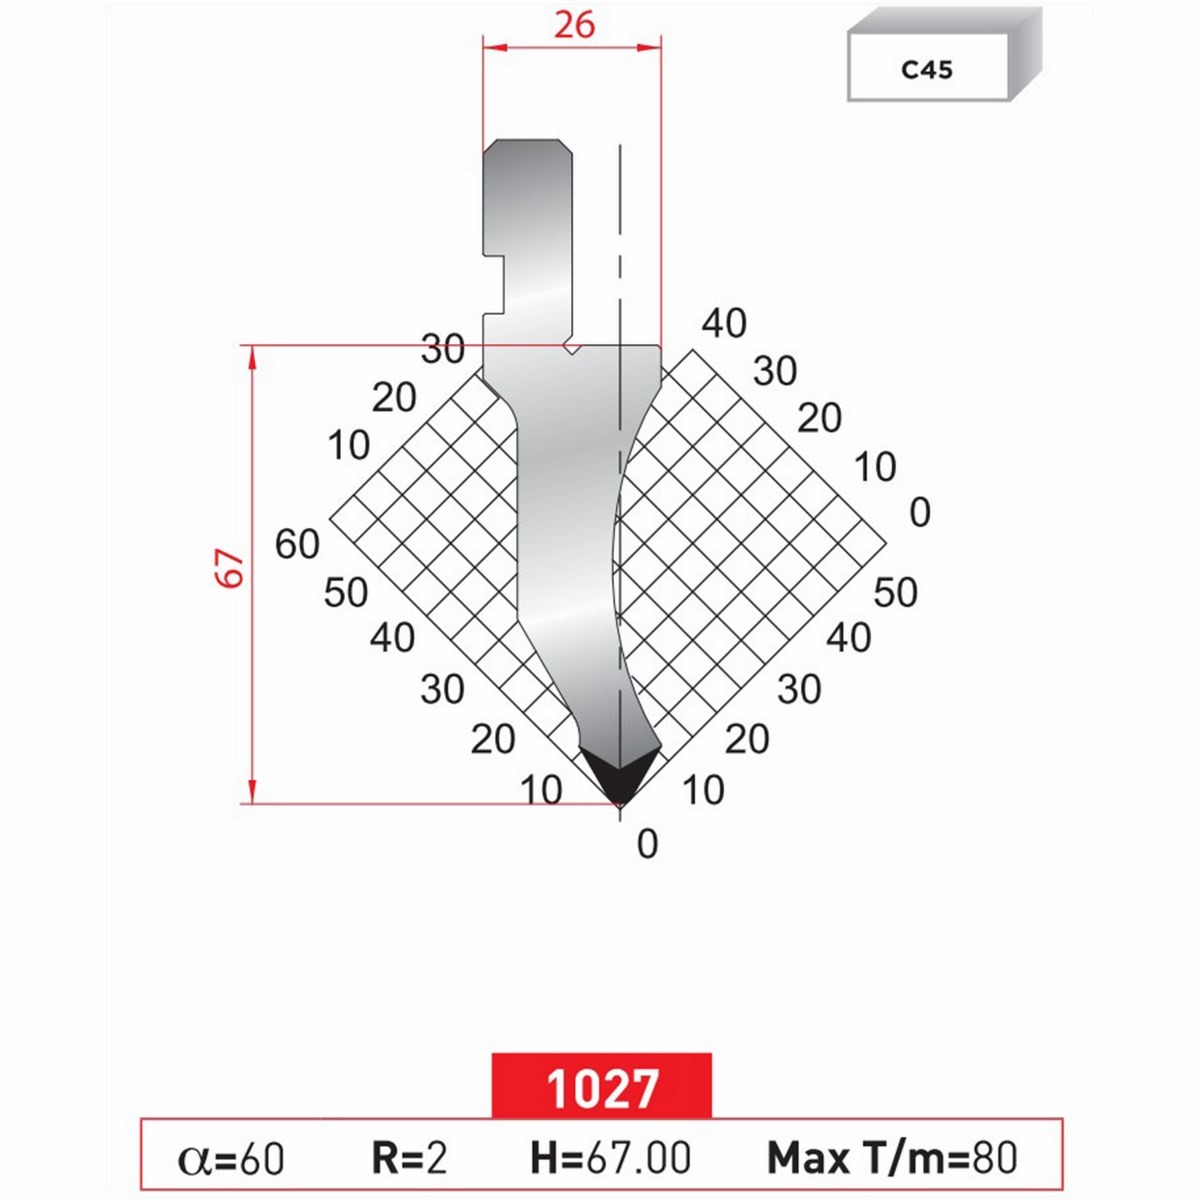 Poinçon 1027 Lg: 805 mm Fractionné